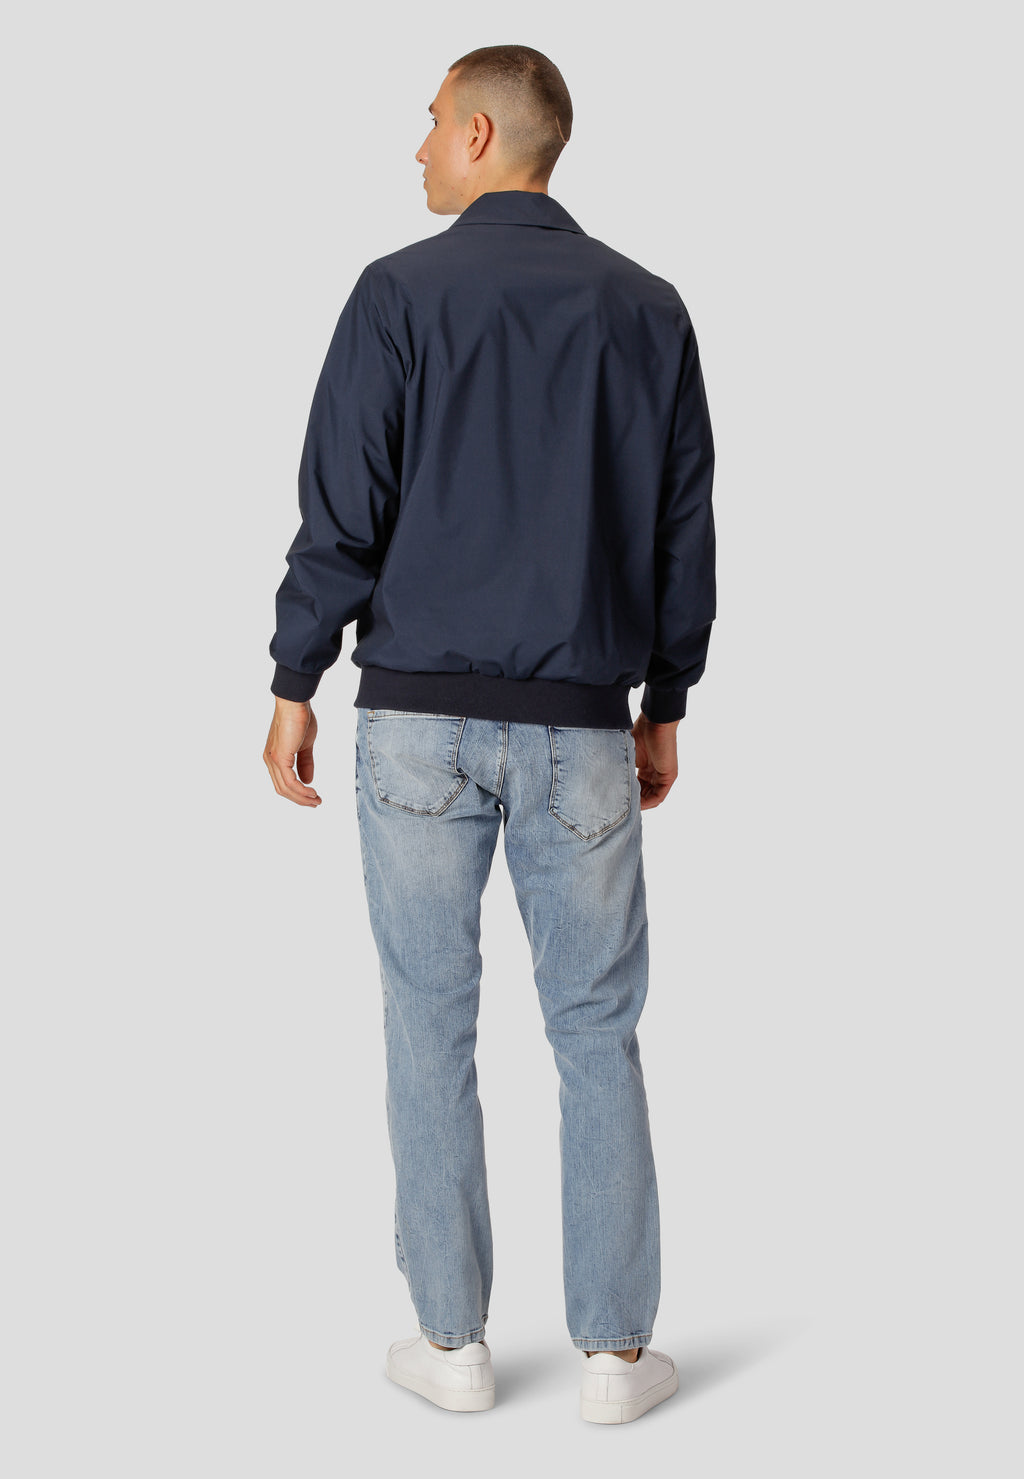 Hell Gewaschene Jeans von Clean Cut Copenhagen in 5 Pocket Design.